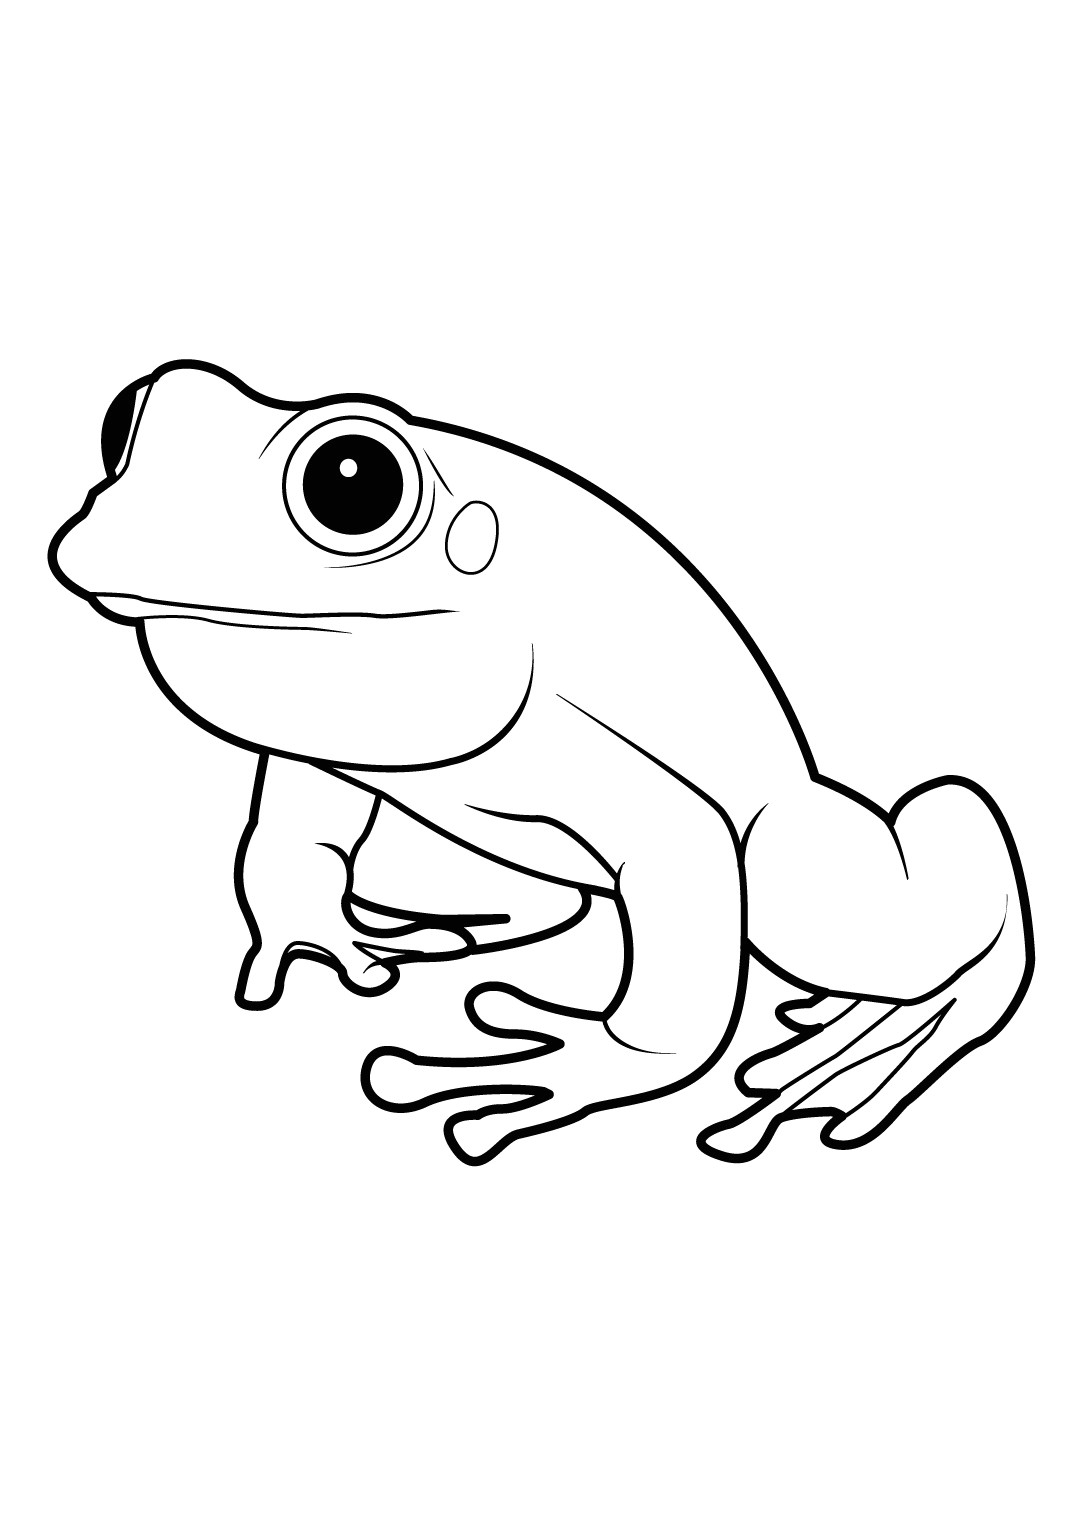 ment dessiner une grenouille